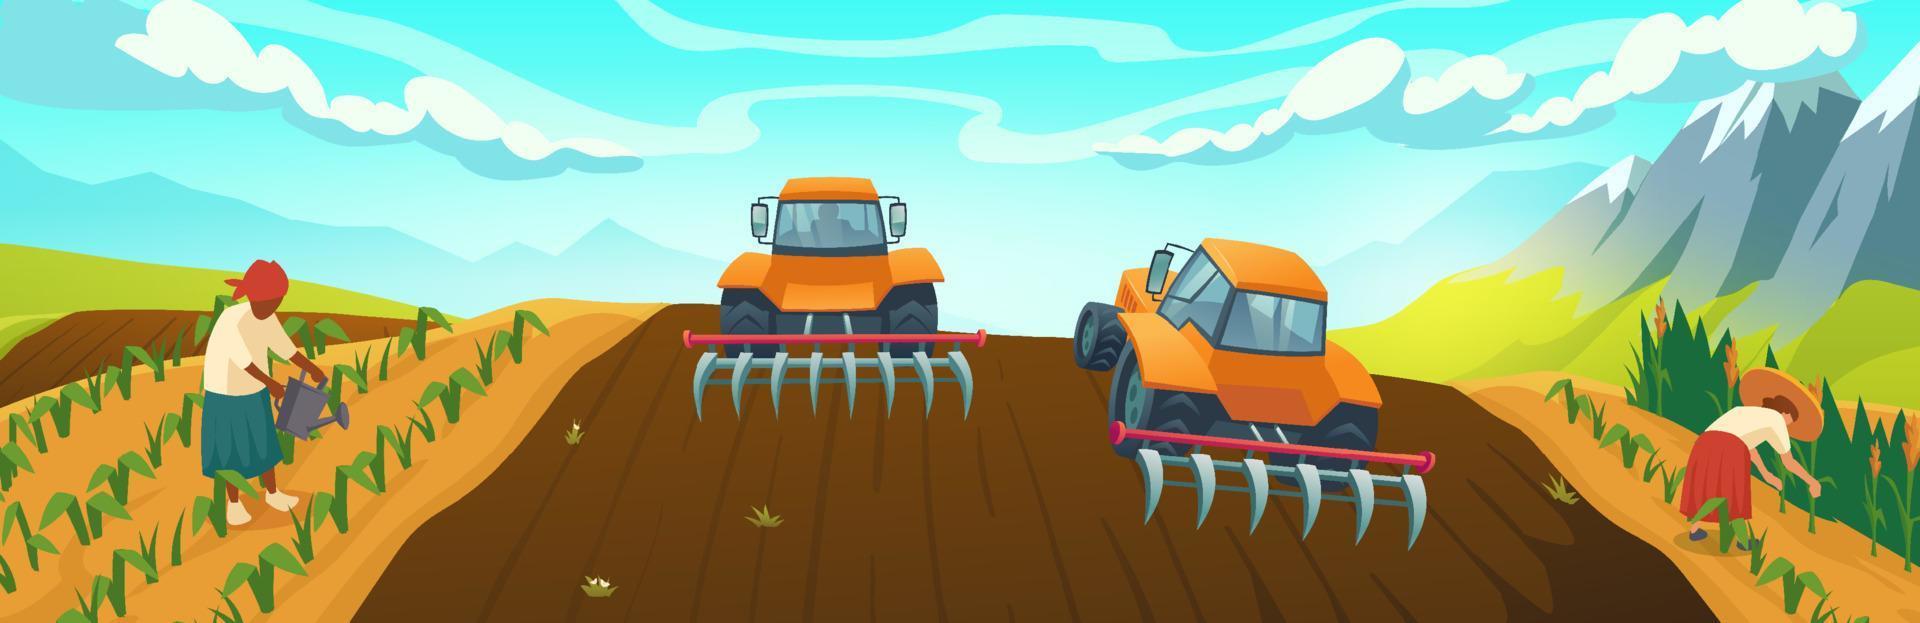 champ agricole avec tracteur de labour et travail des agriculteurs vecteur